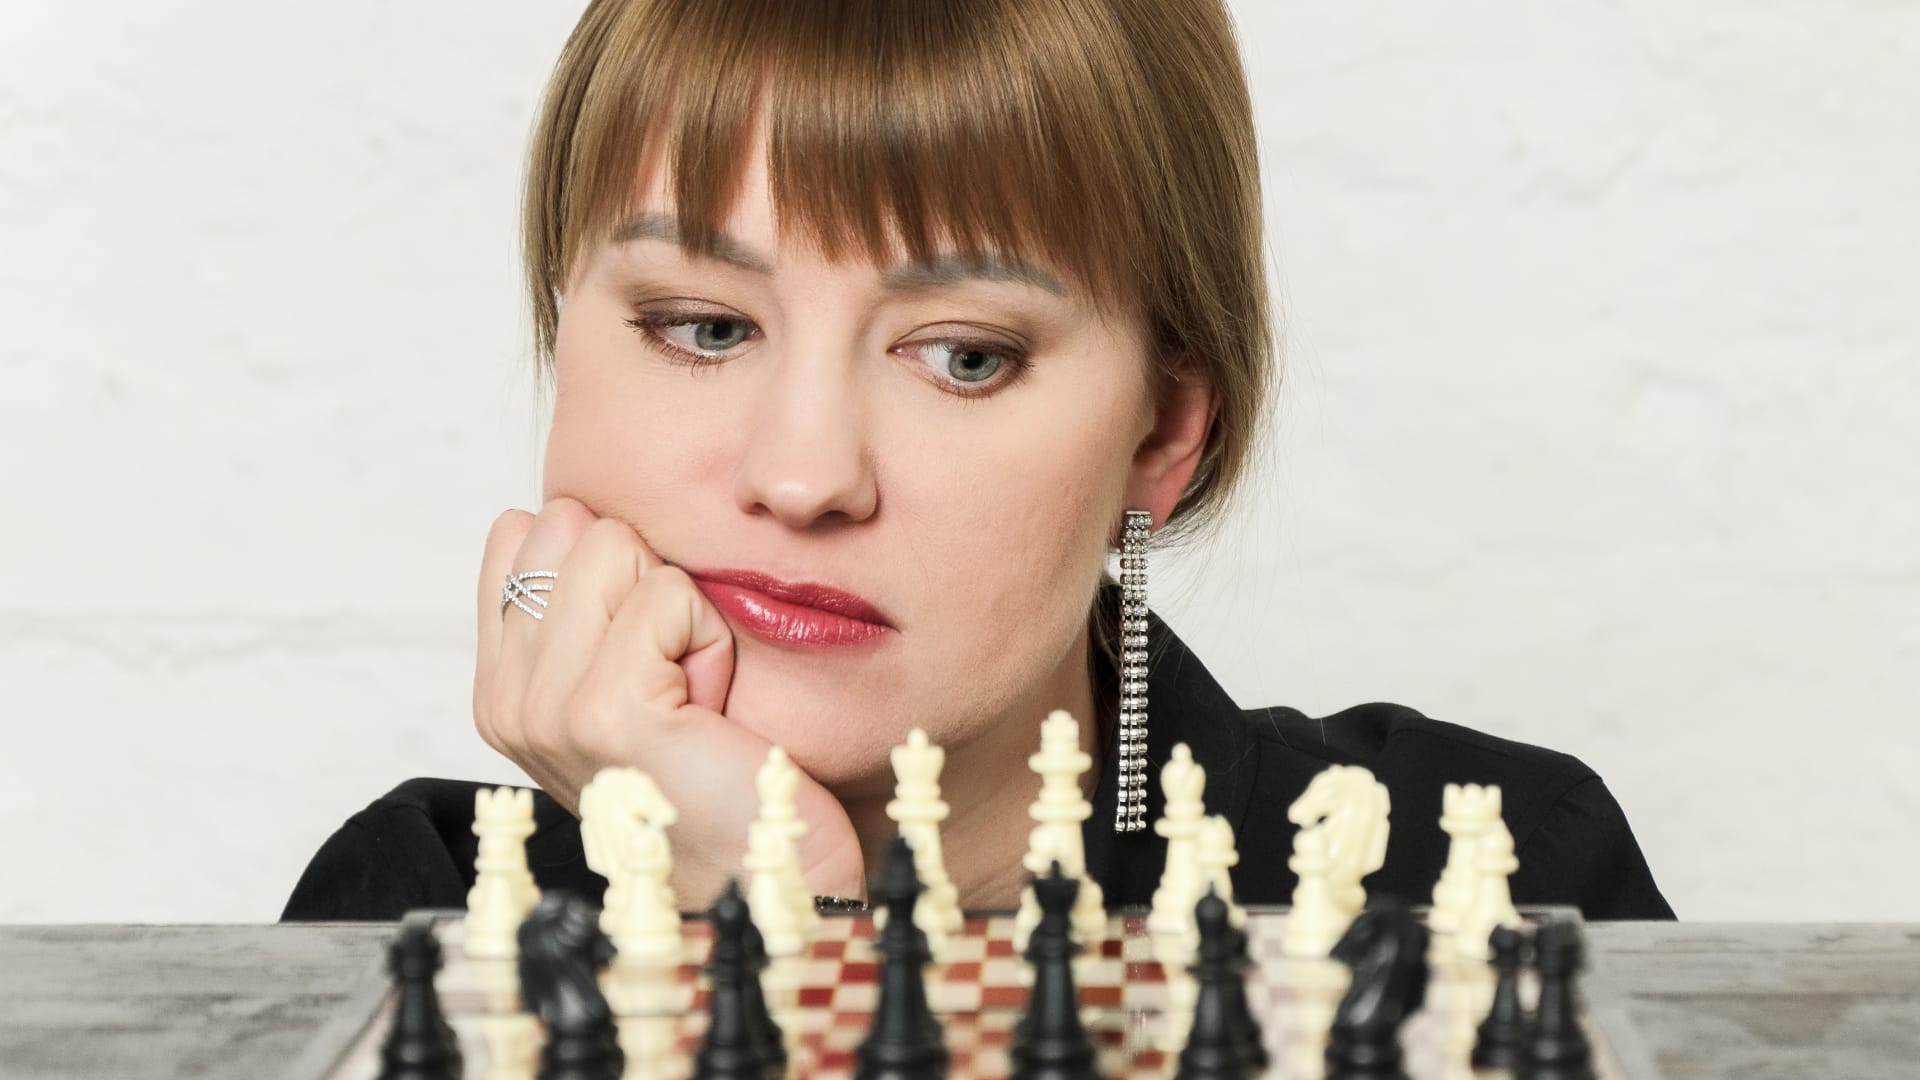 women-in-chess